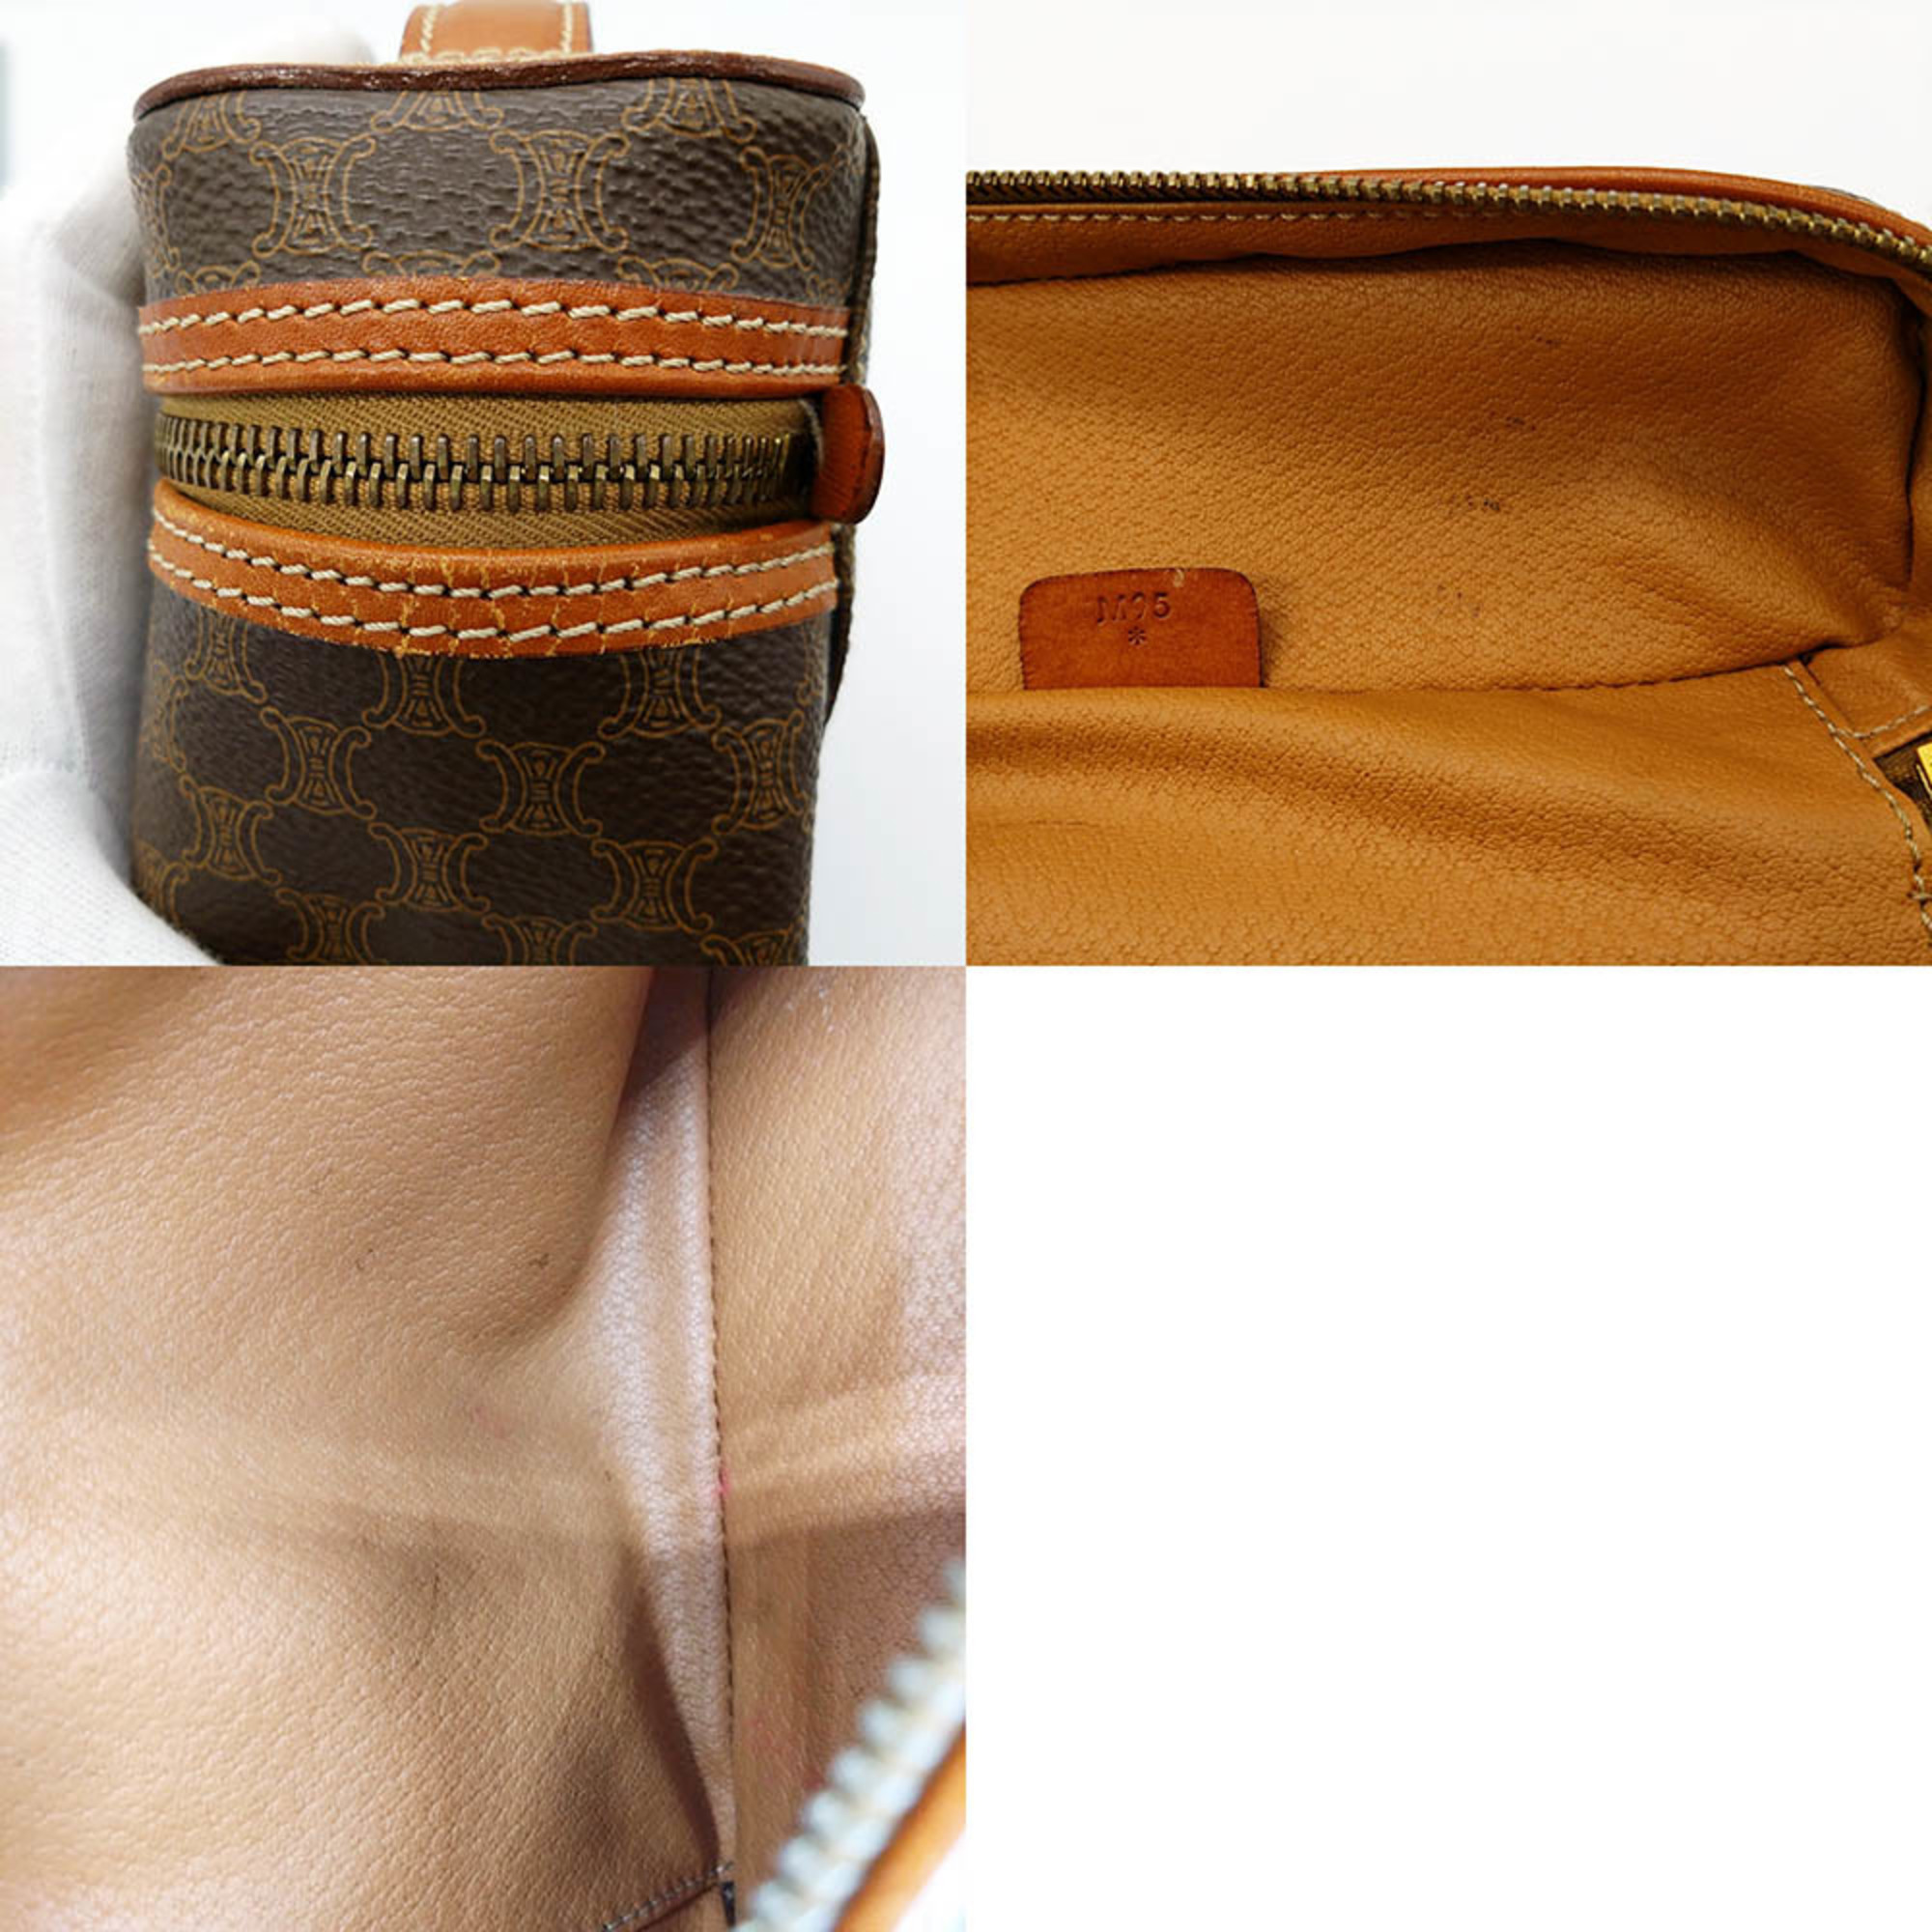 Celine handbag vanity bag with macadam pattern brown leather ladies M95 CELINE